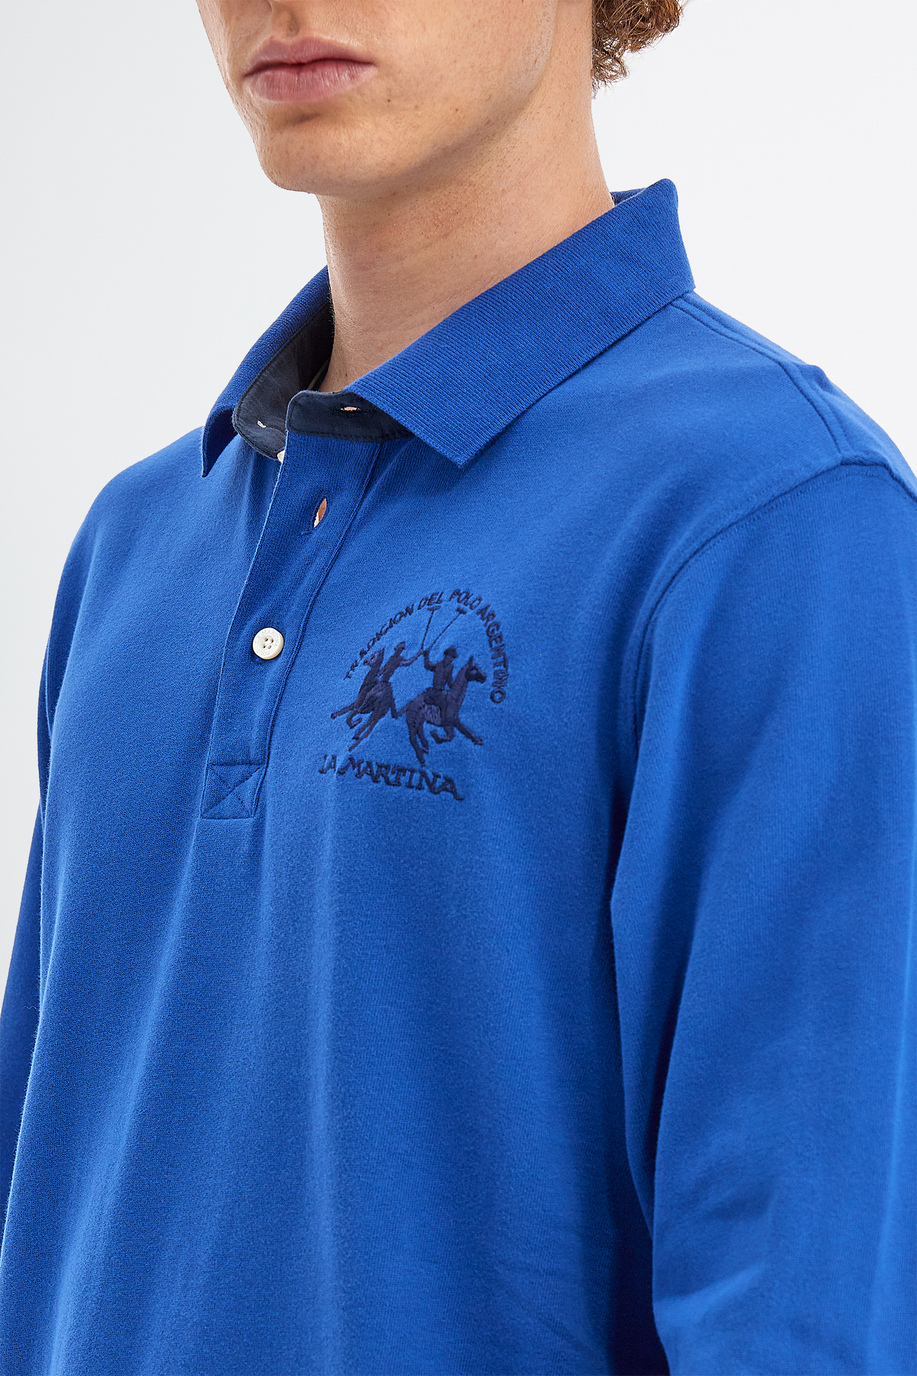 Polo homme en jersey de coton manches longues slim fit - Polos | La Martina - Official Online Shop